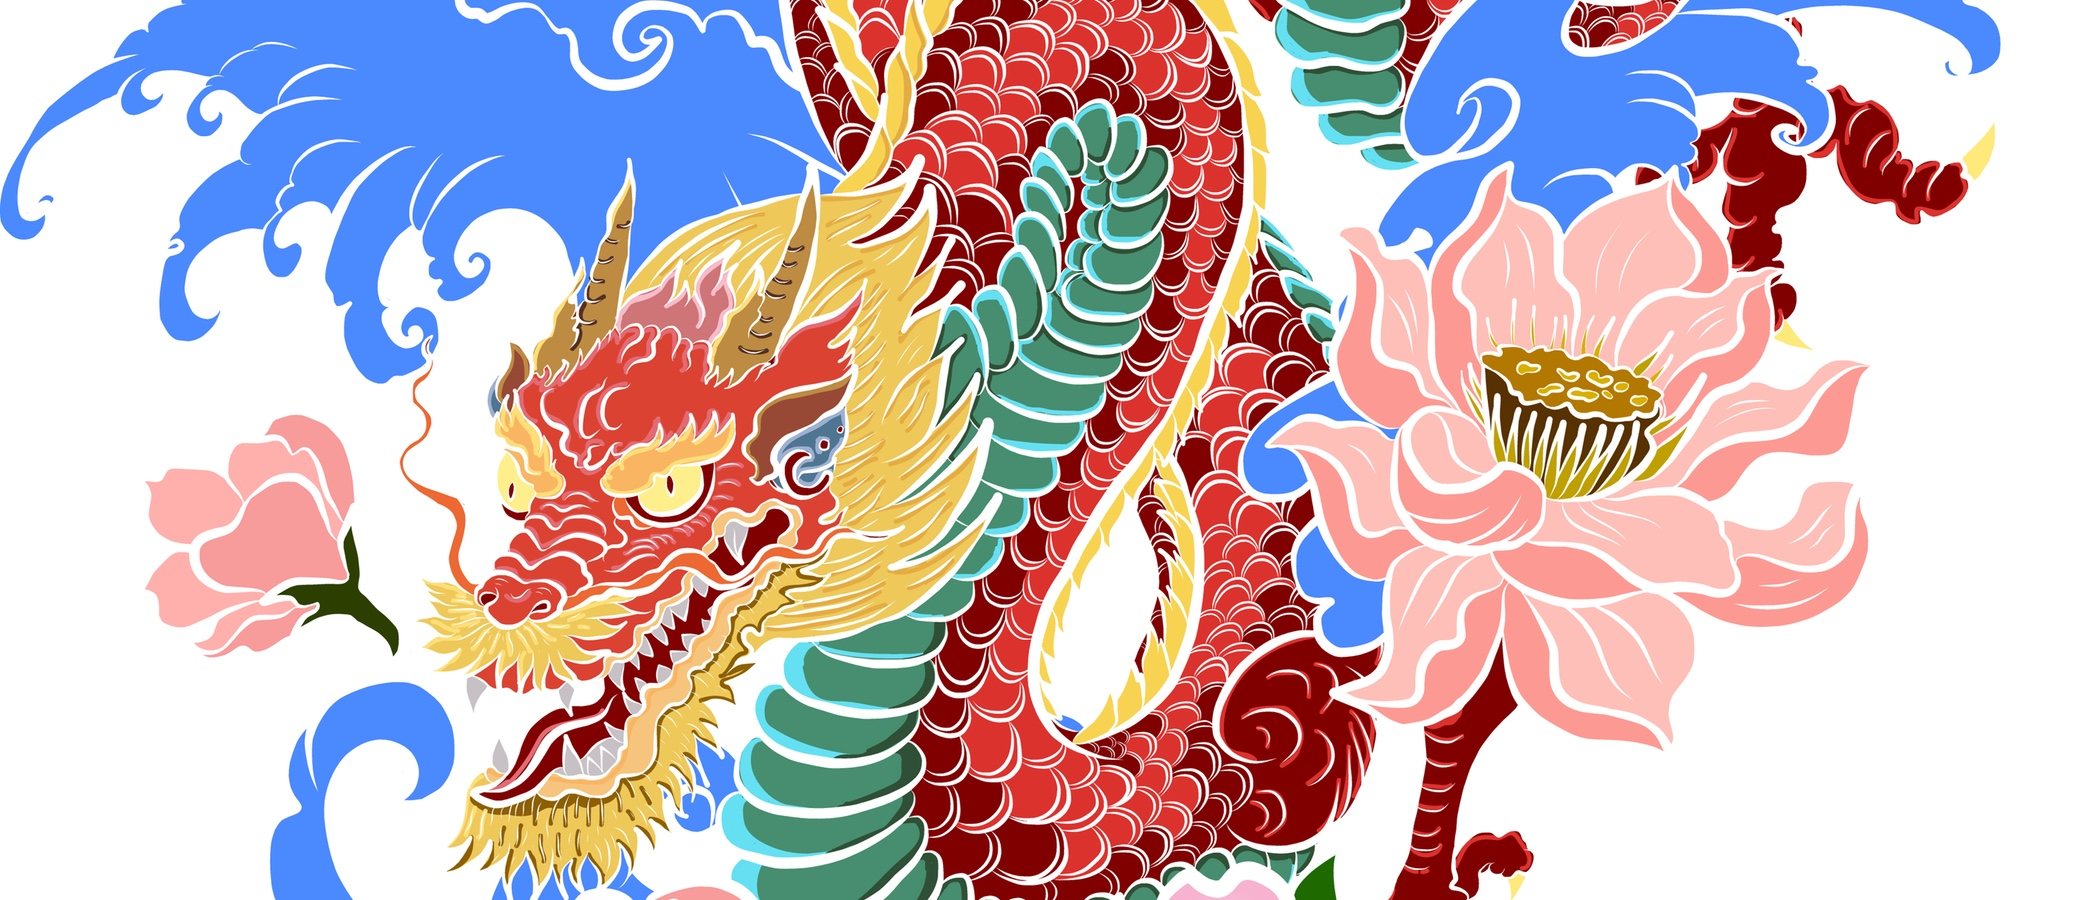 Horóscopo chino 2020: Dragón